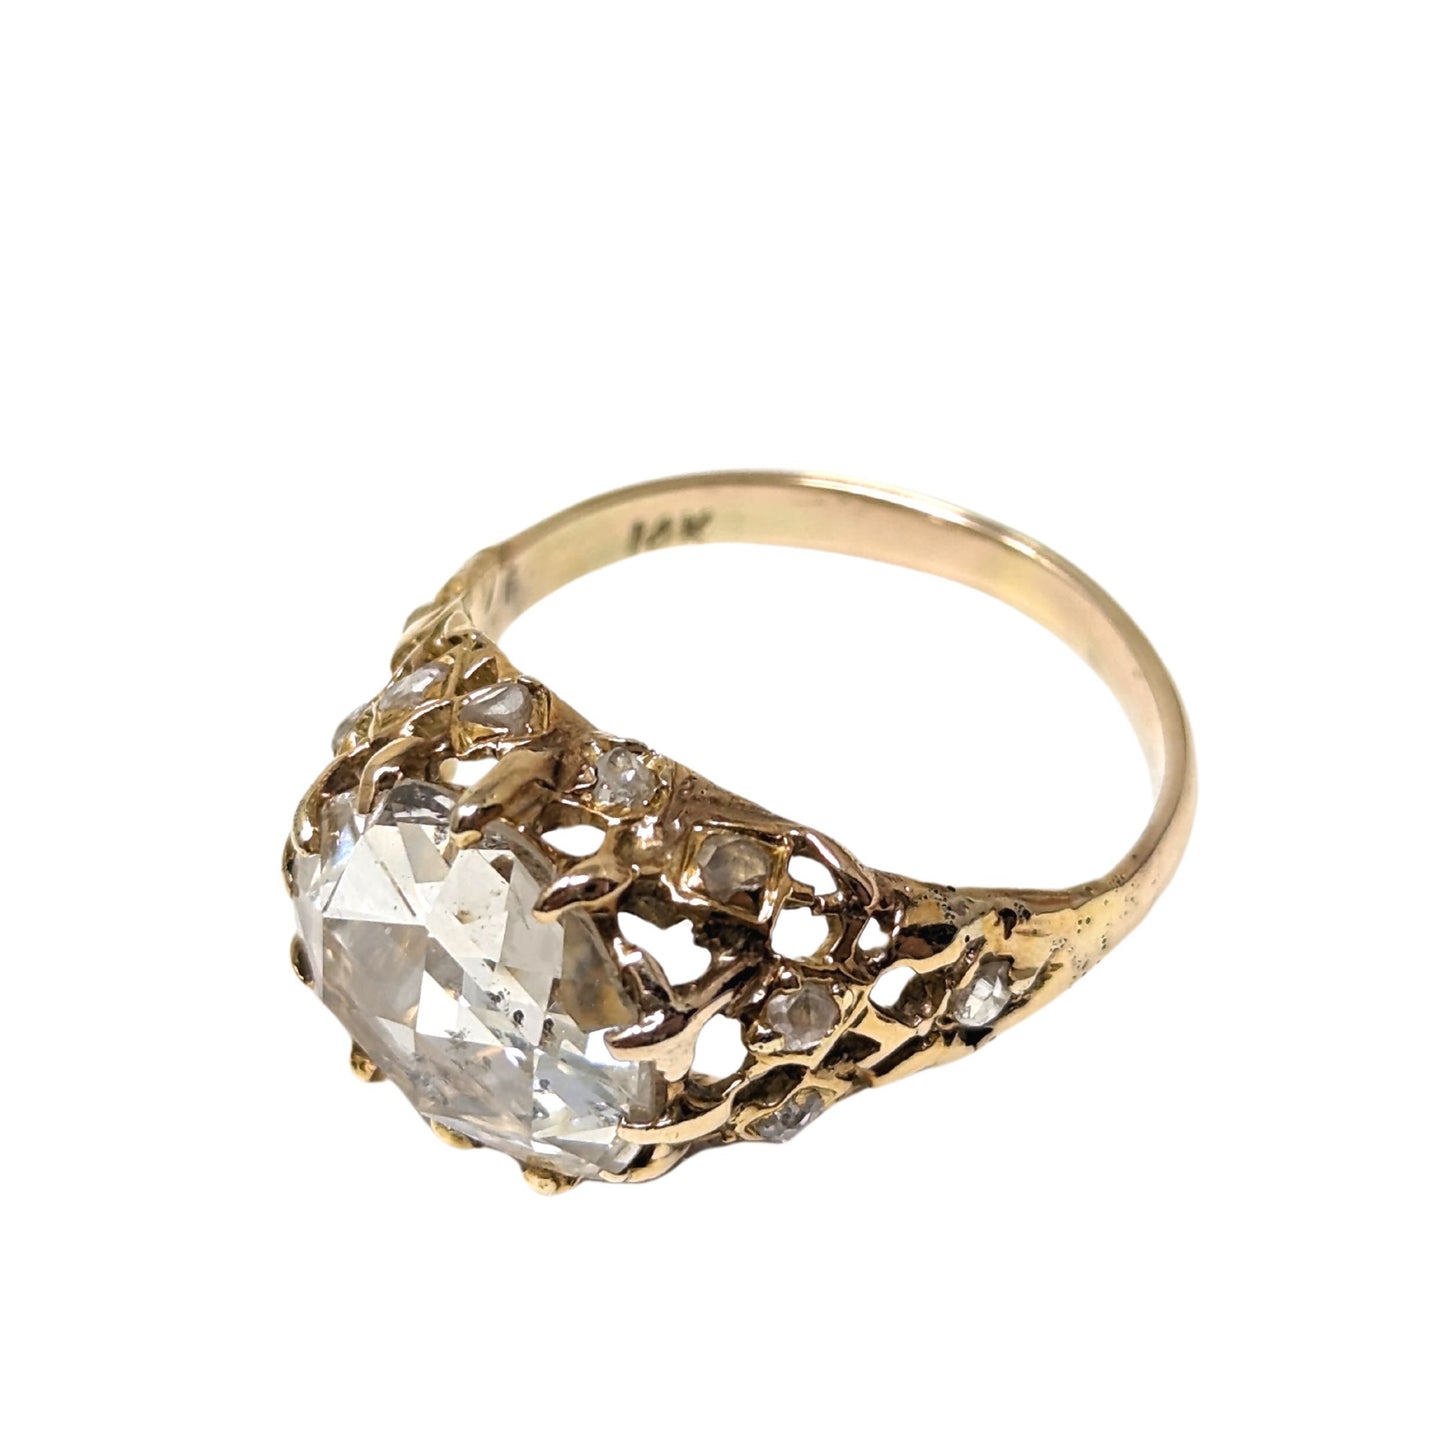 14K Gold Antique 3+ Ct Rose Cut Diamond Wedding Ring Set